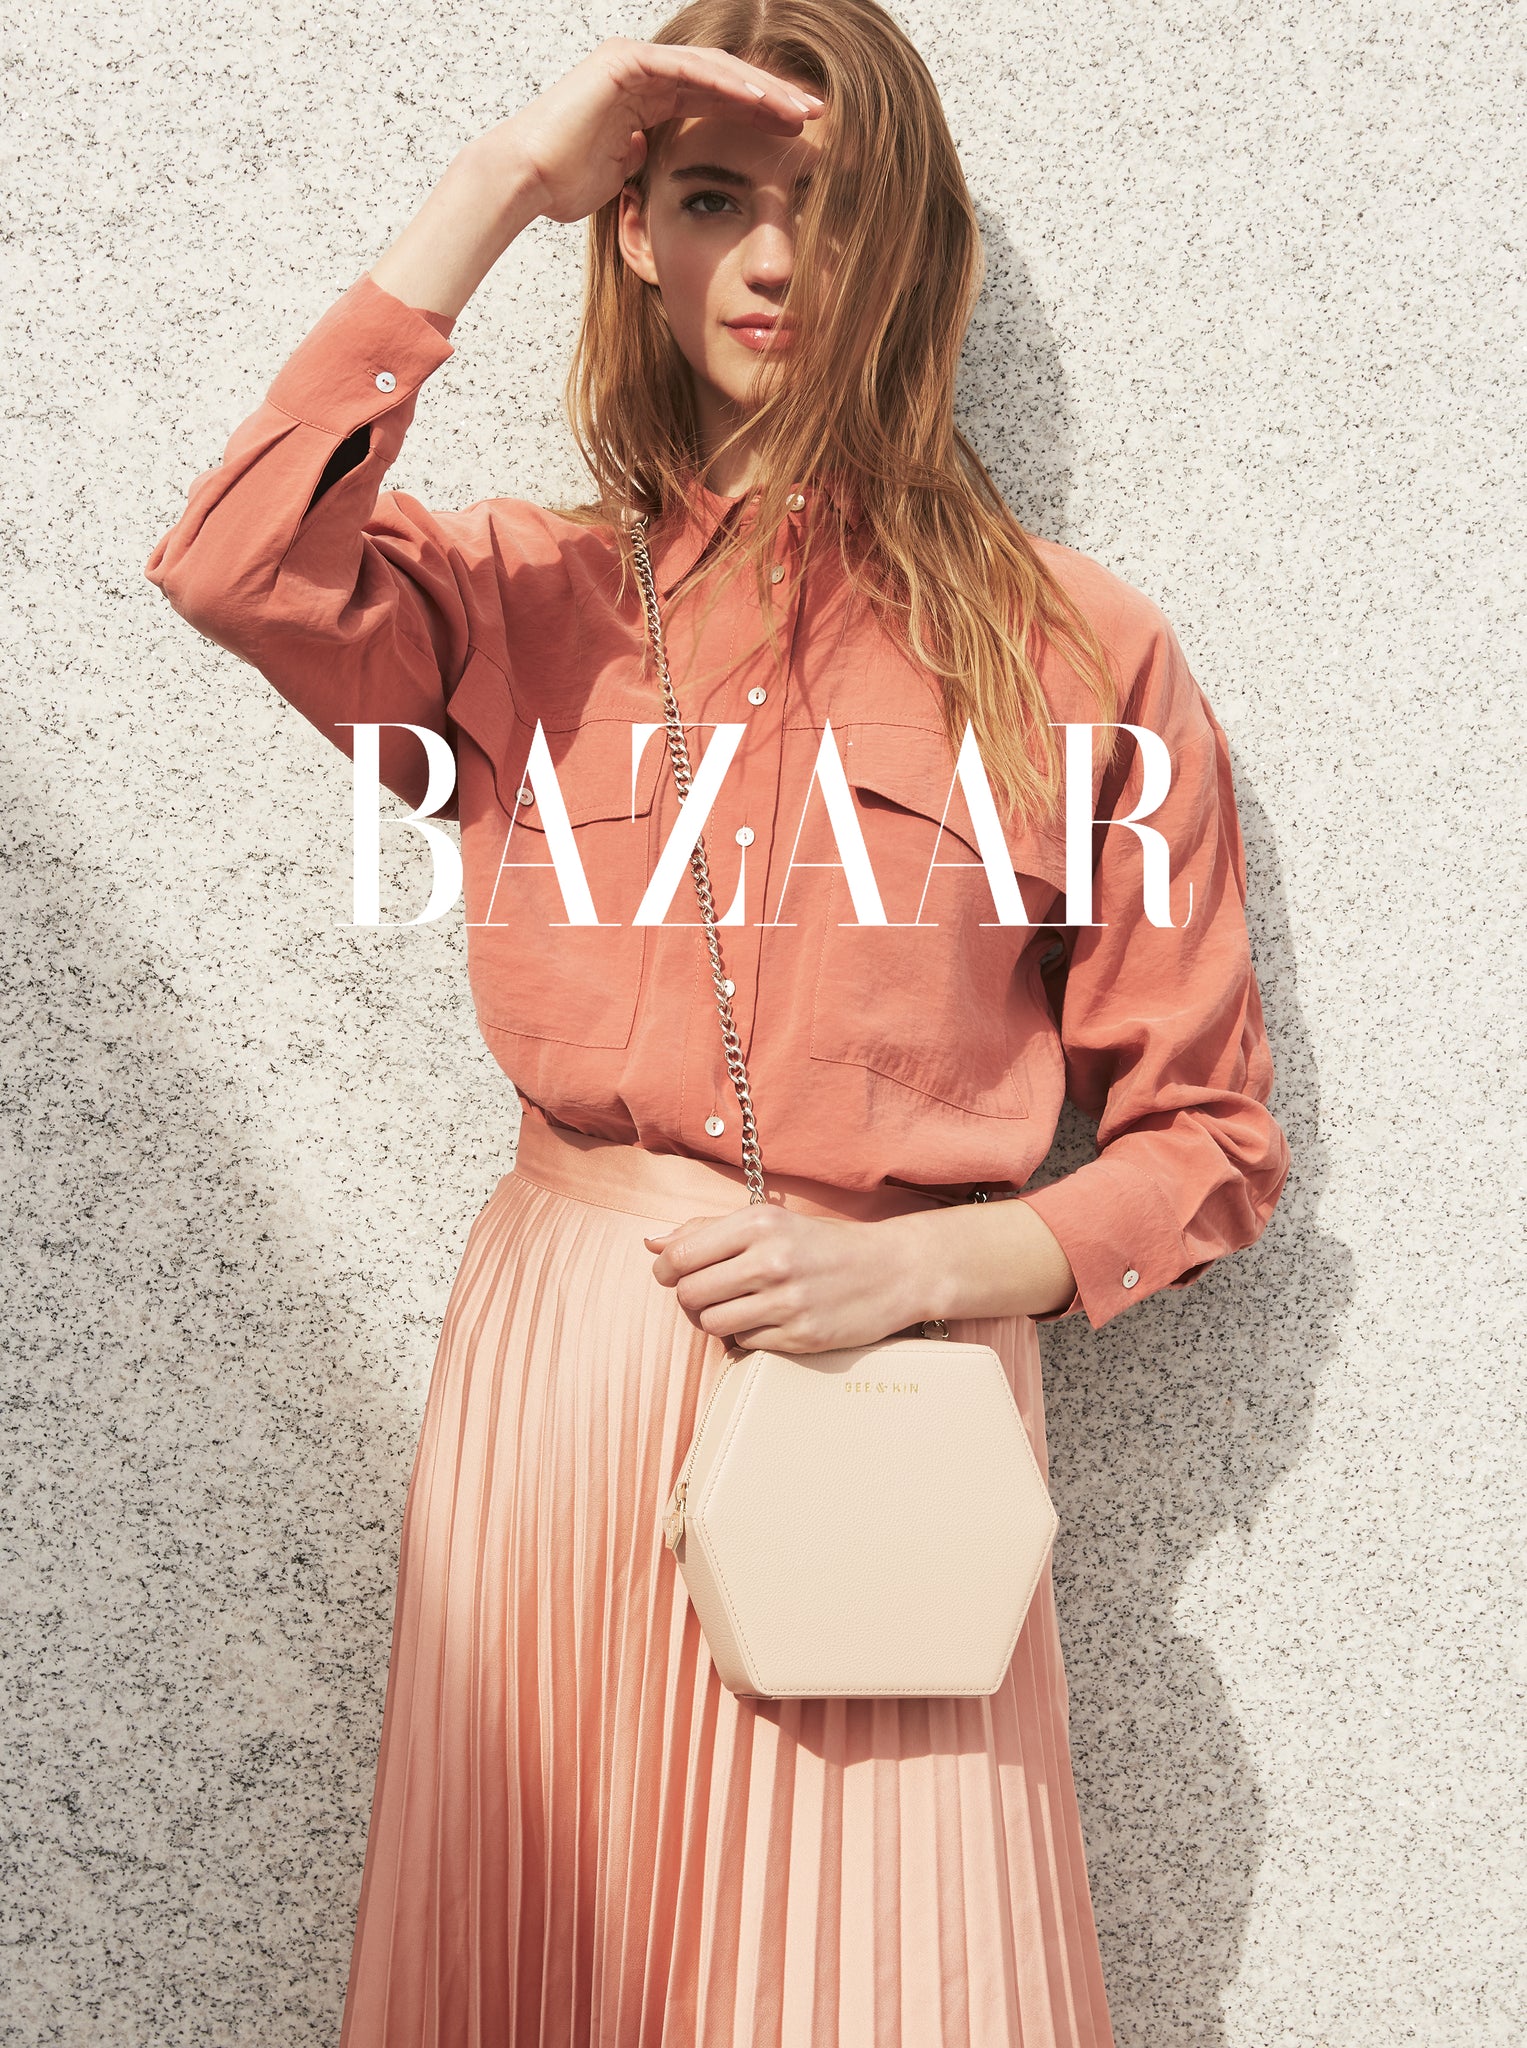 07.09 | Harper's Bazaar